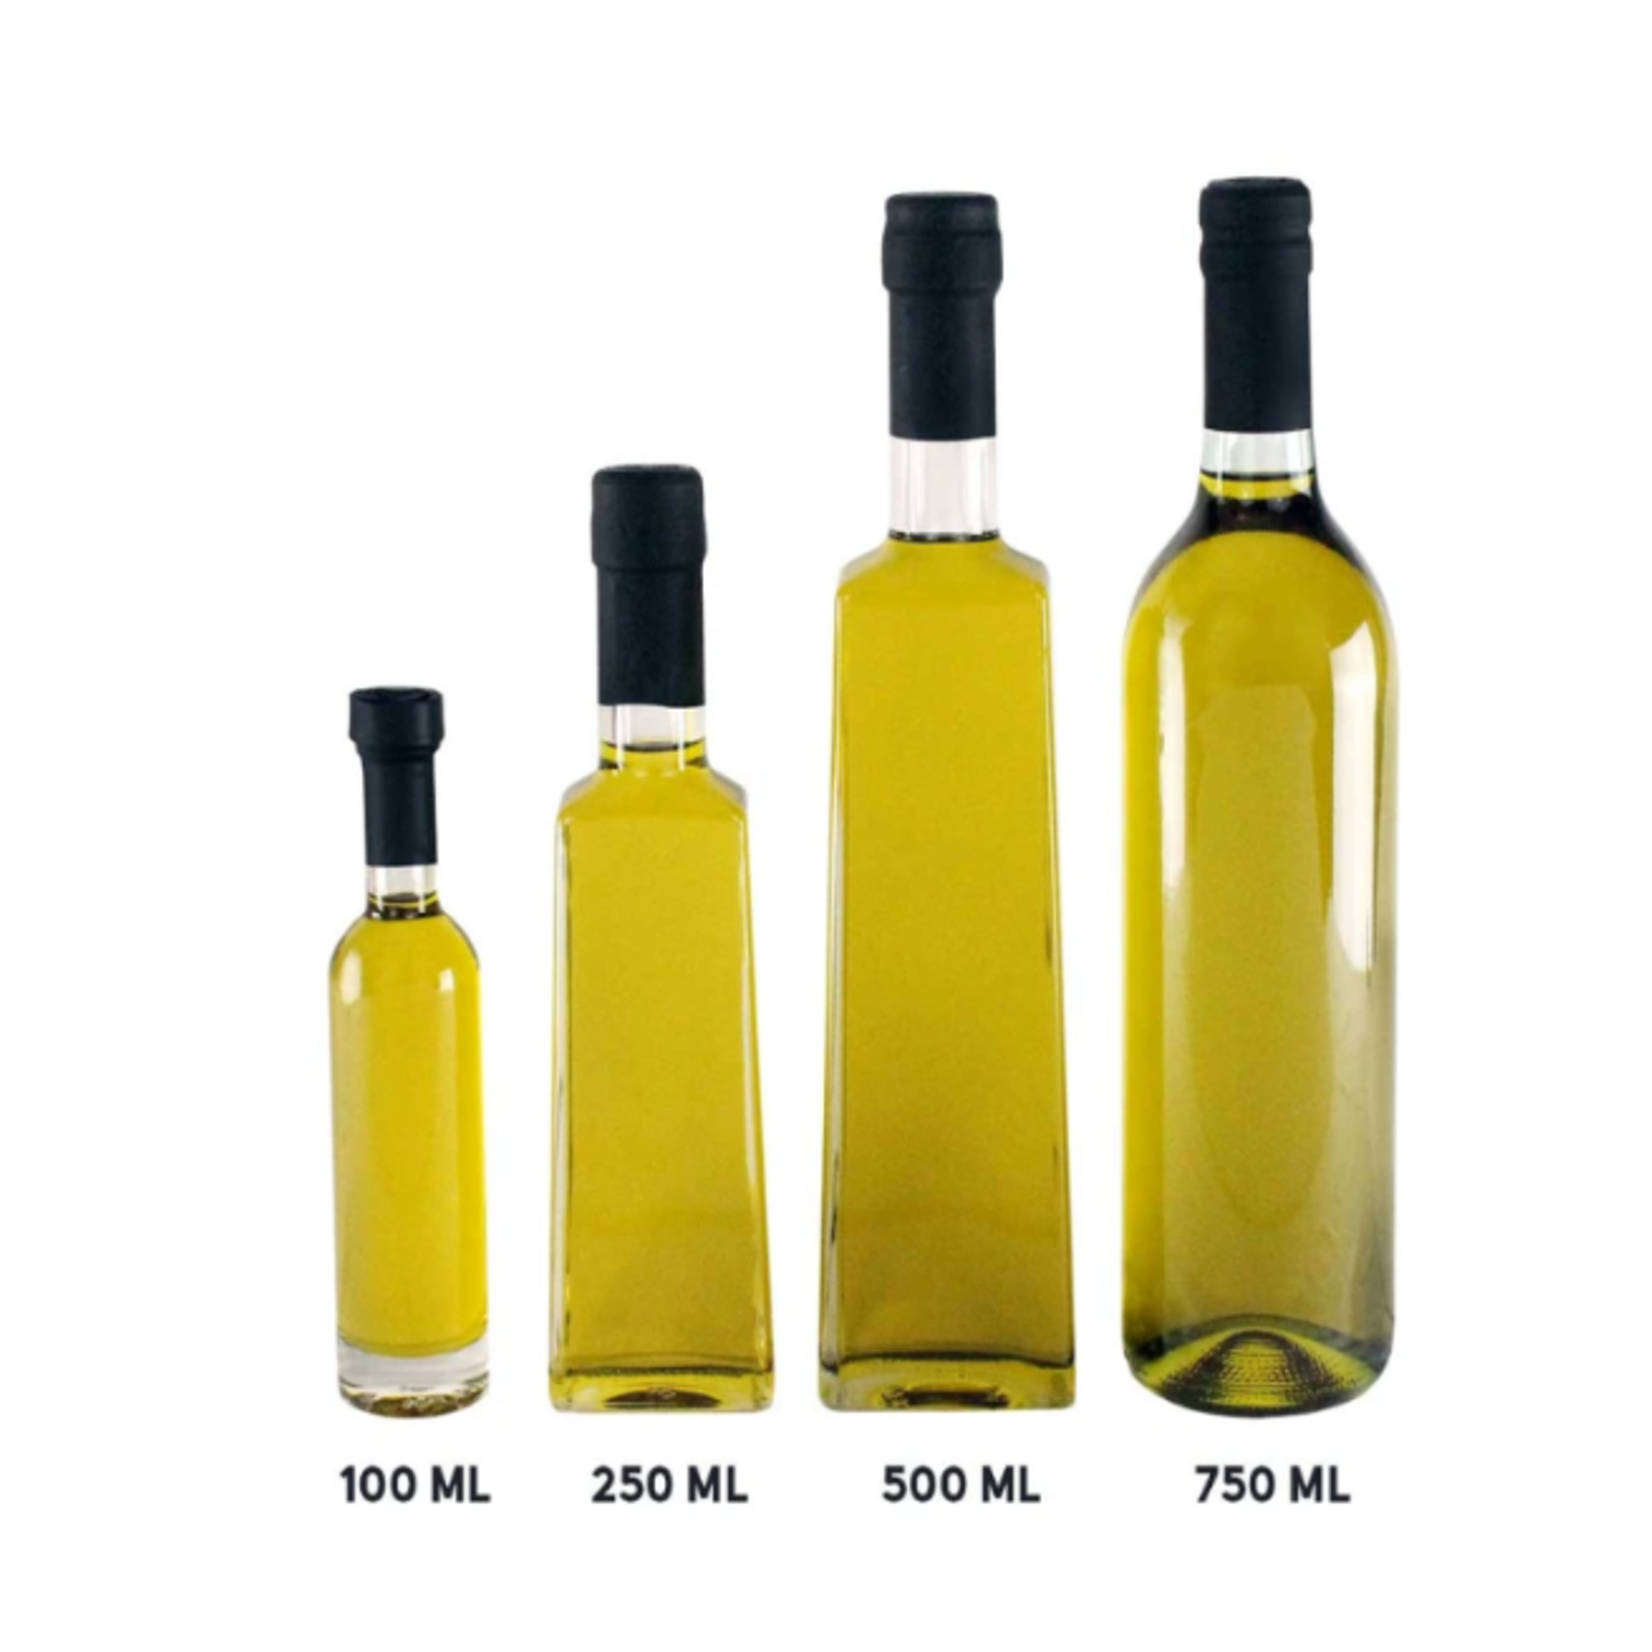 Olivelle Roasted Shallot Olive Oil